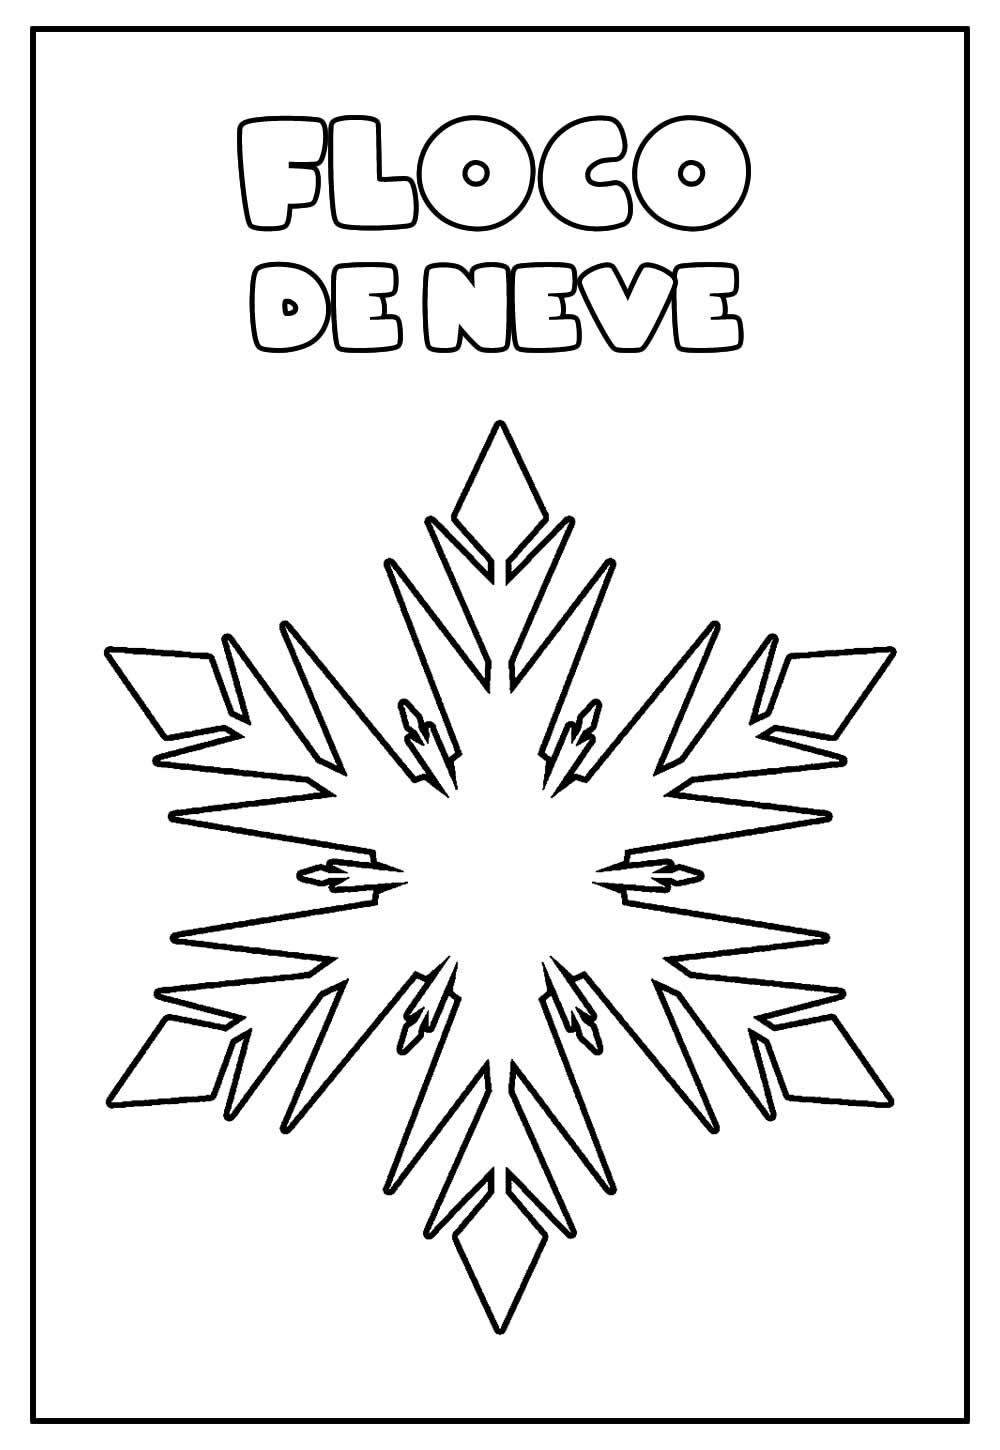 Desenho Educativo de Floco de Neve para colorir